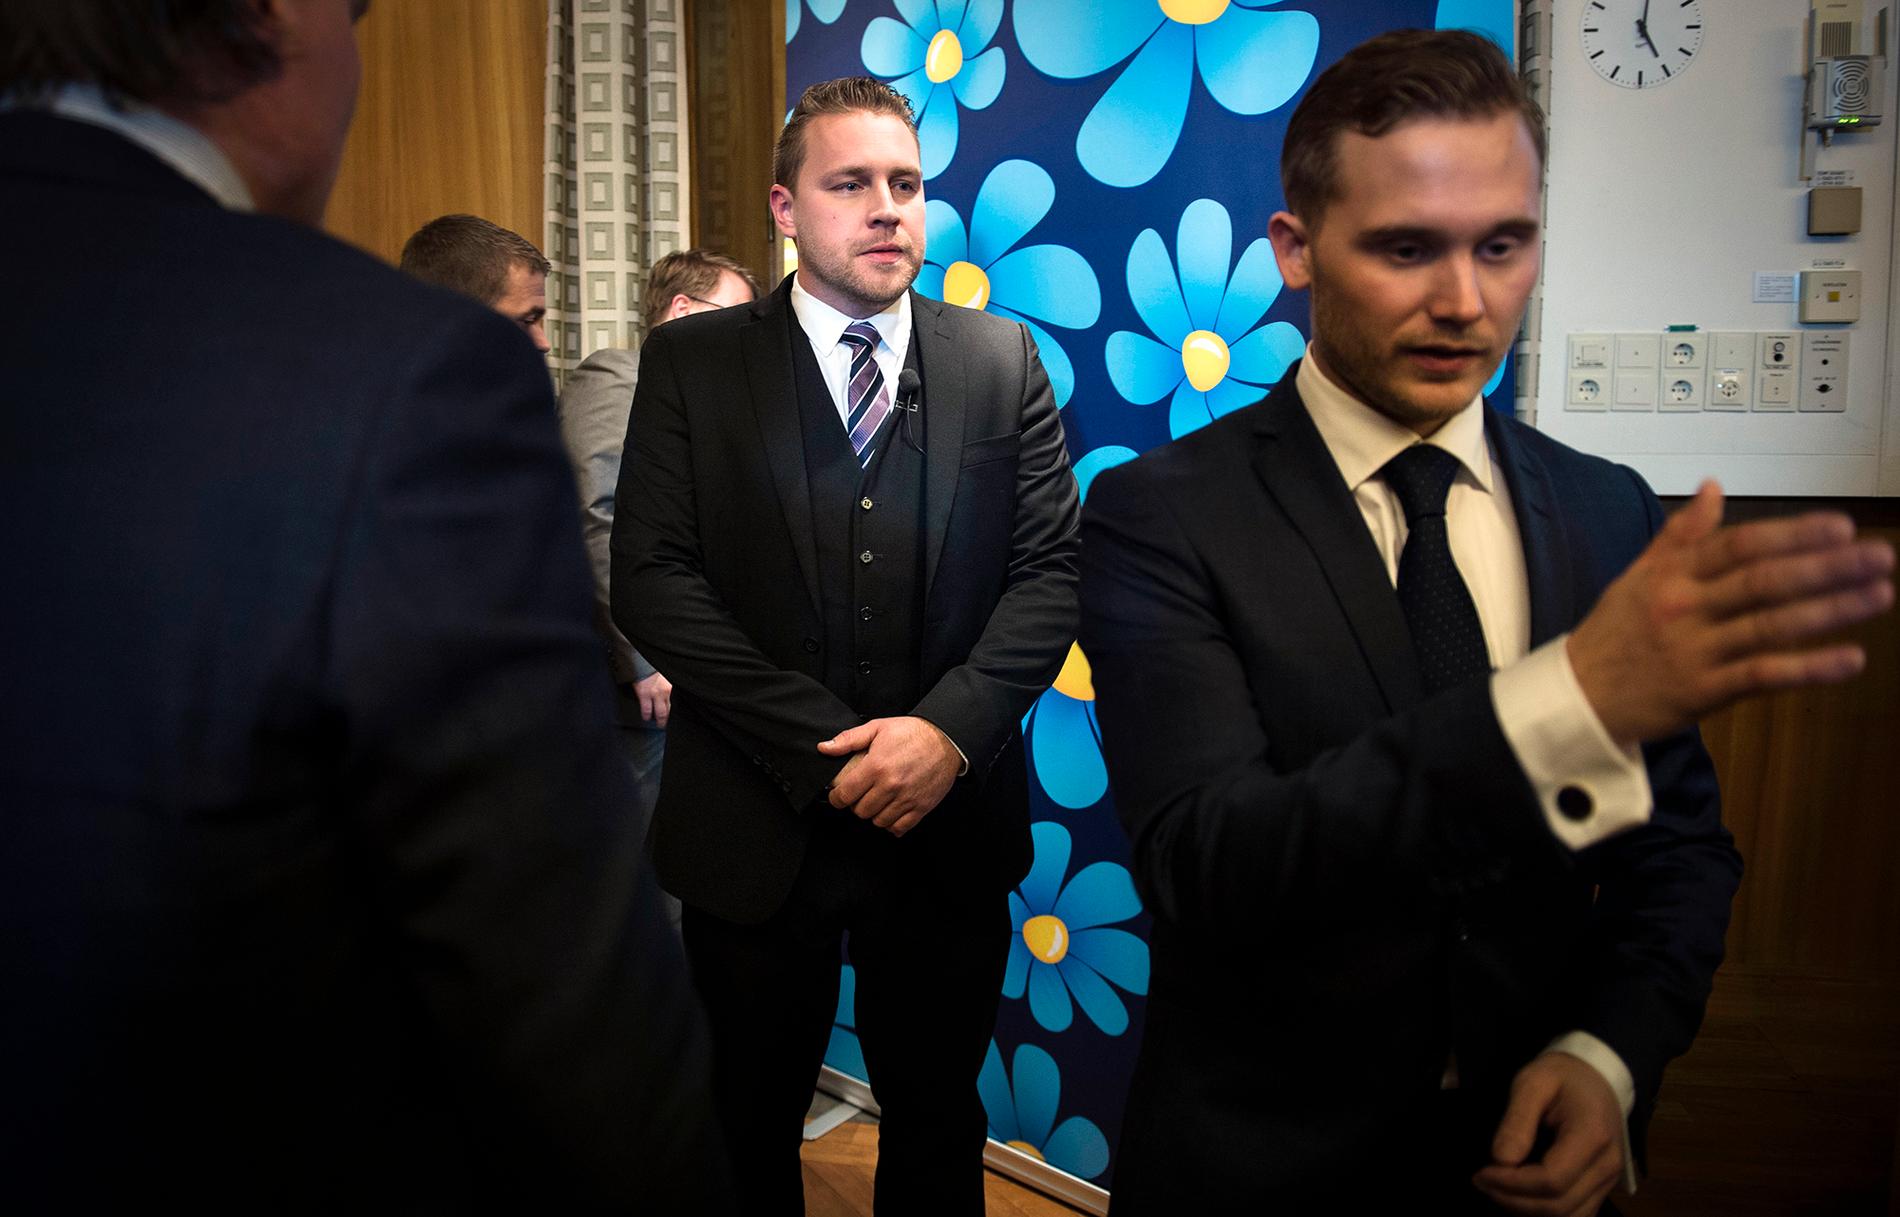 Sverigedemokraternas tf partiledare Mattias Karlsson lämnar presskonferensen efter att ha lämnat beskedet att partiet tänker rösta på oppositionens budgetförslag.